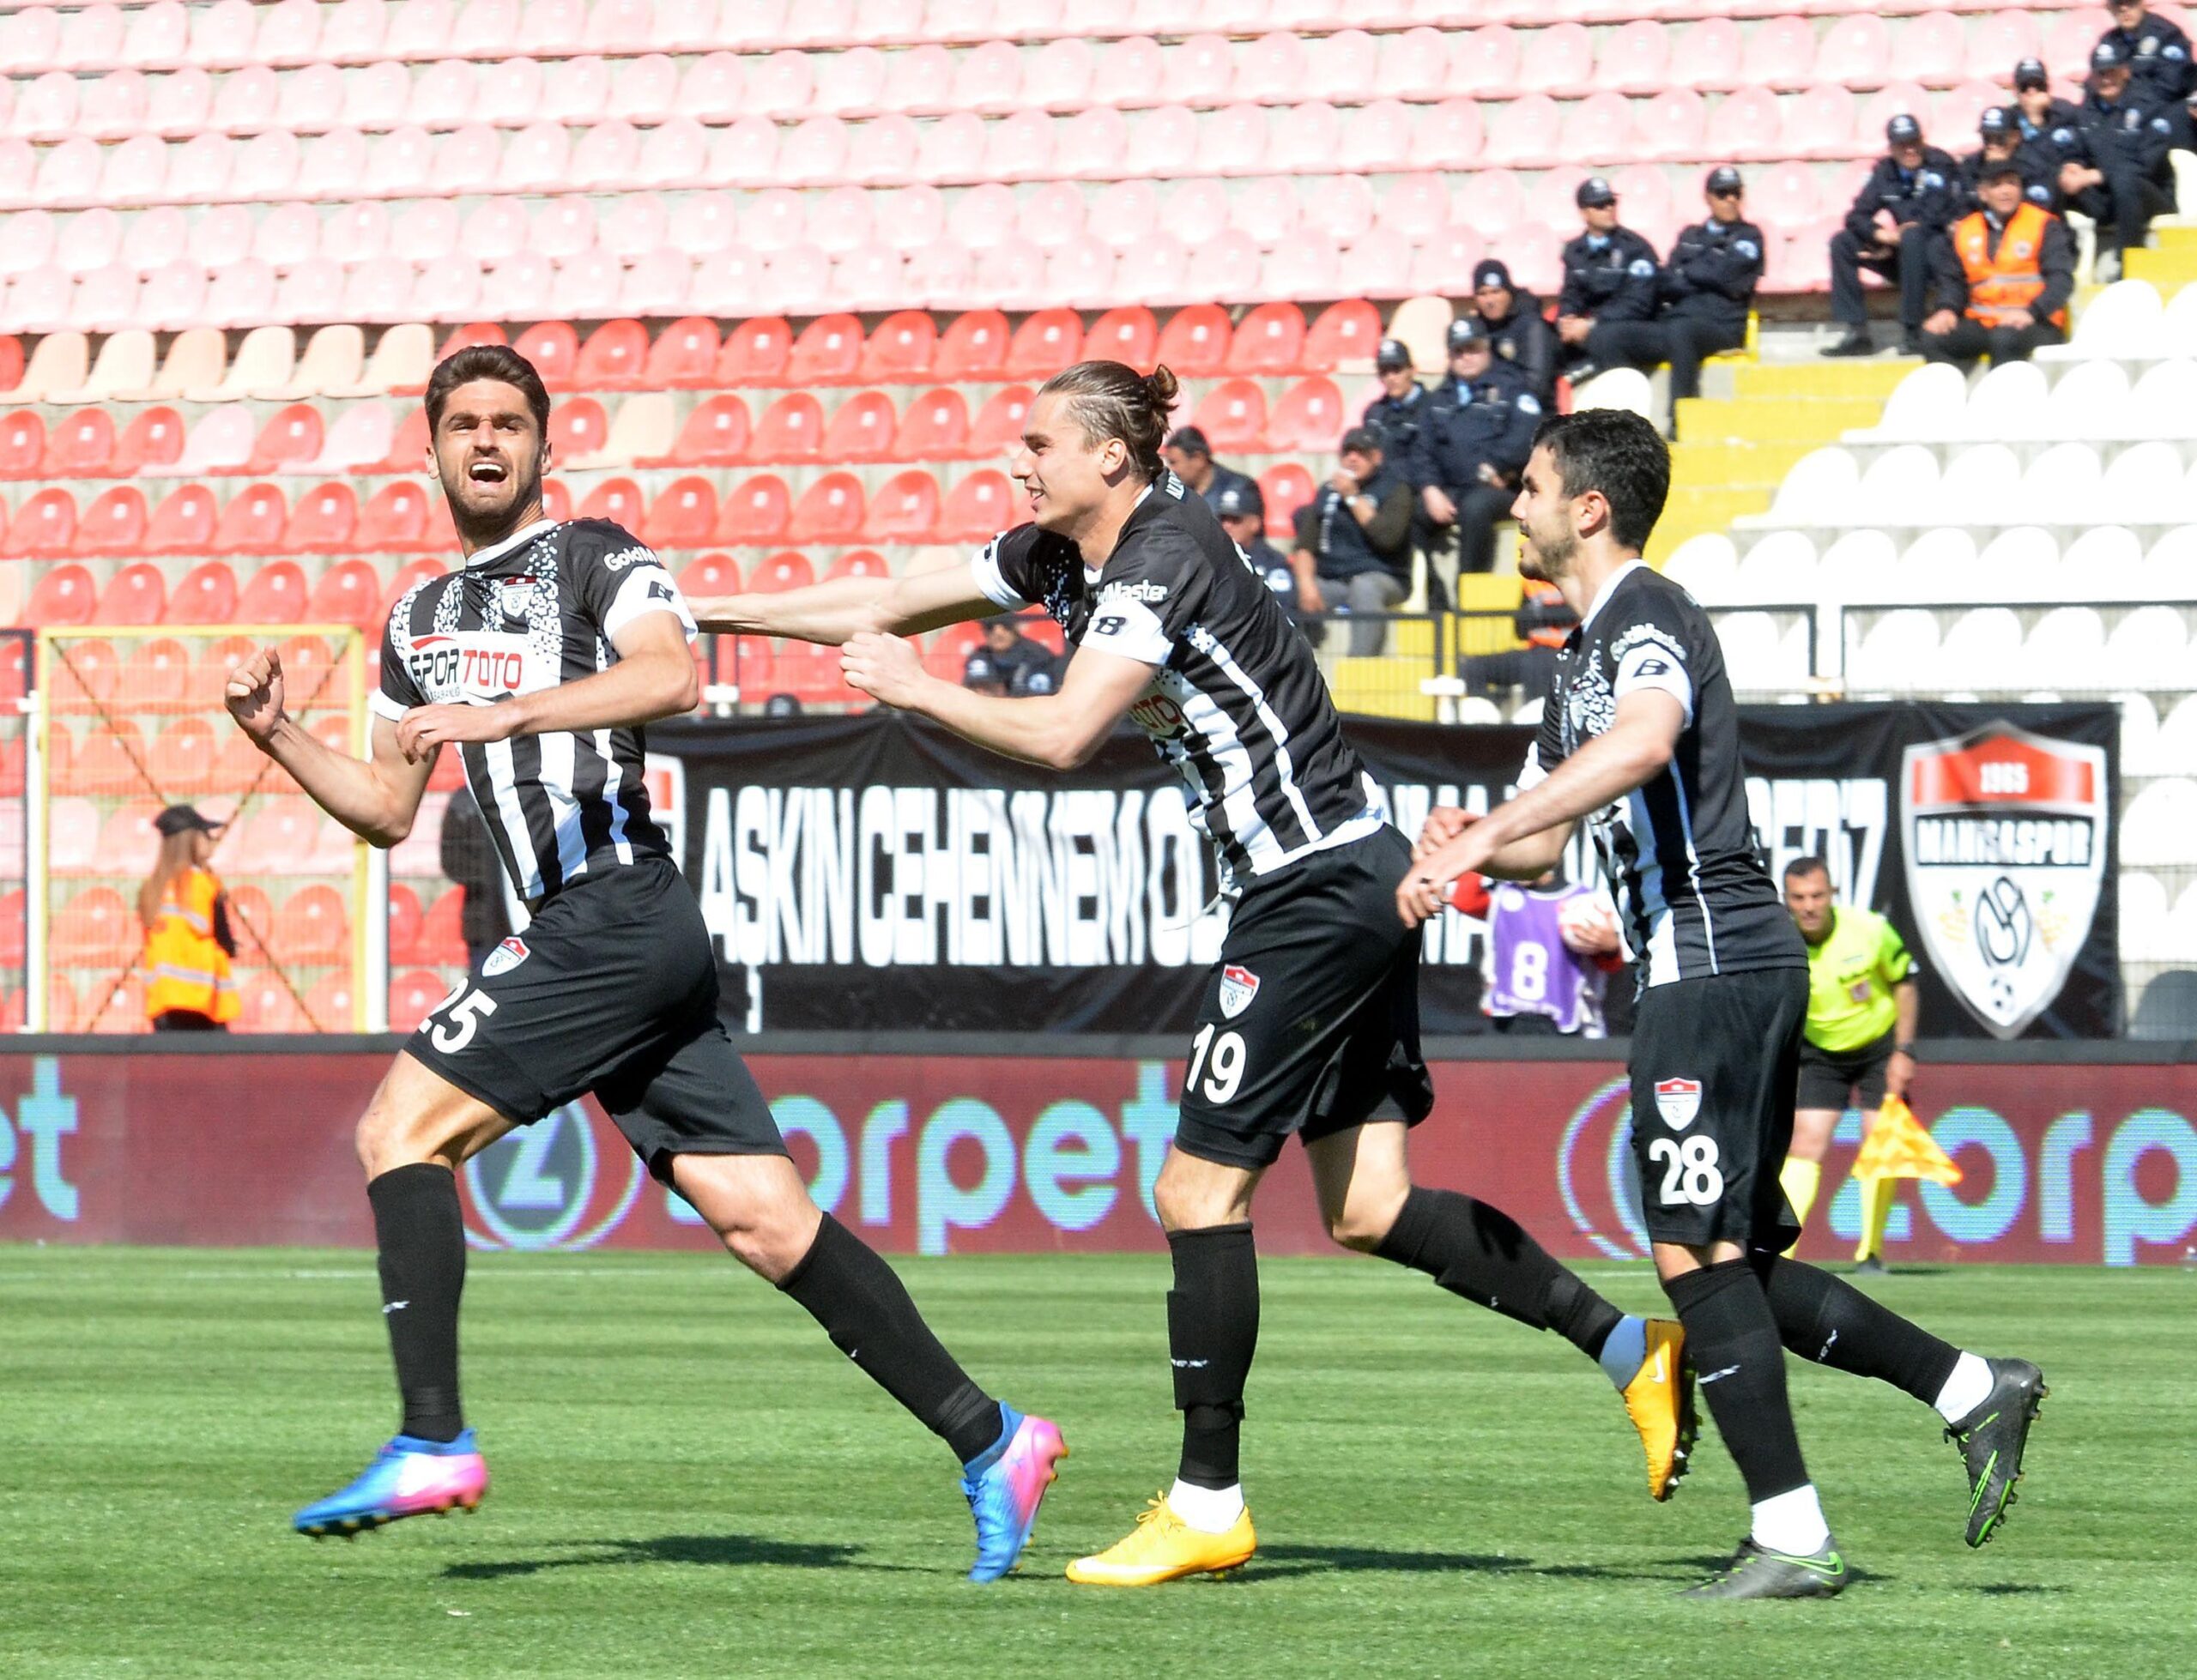 Manisaspor – Mersin İdmanyurdu maç sonucu: 2-0